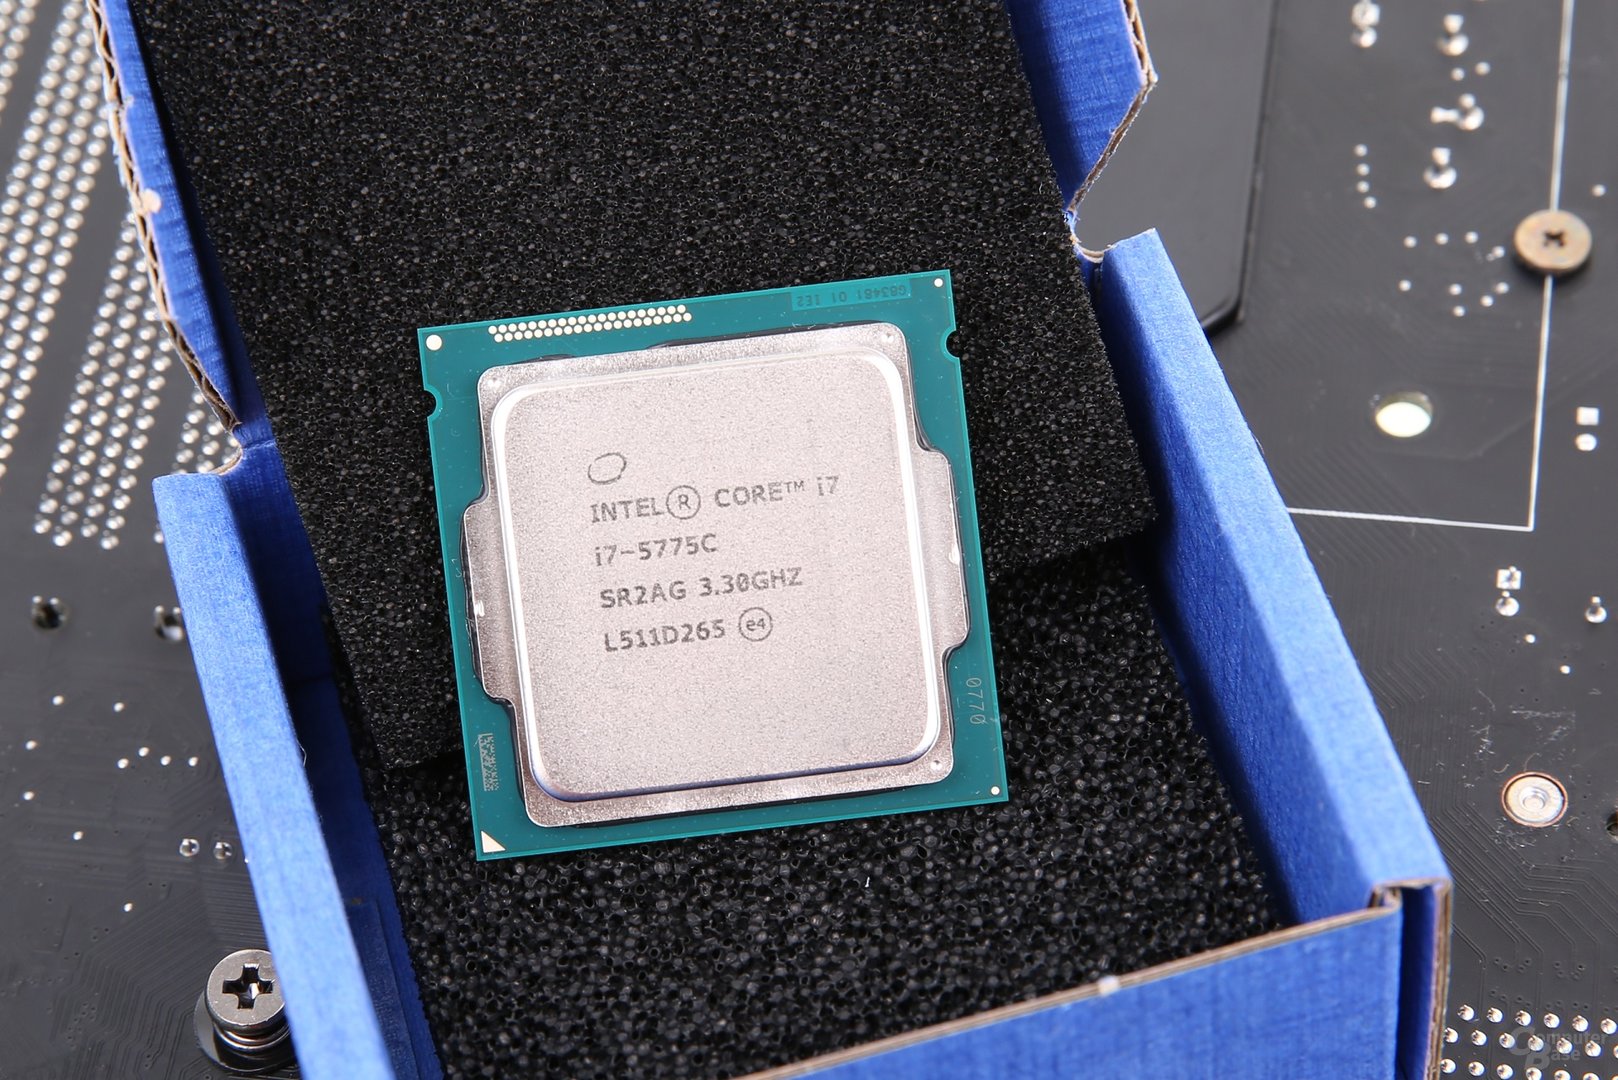 Intel Core i7-5775C in der Tray-Auslieferung